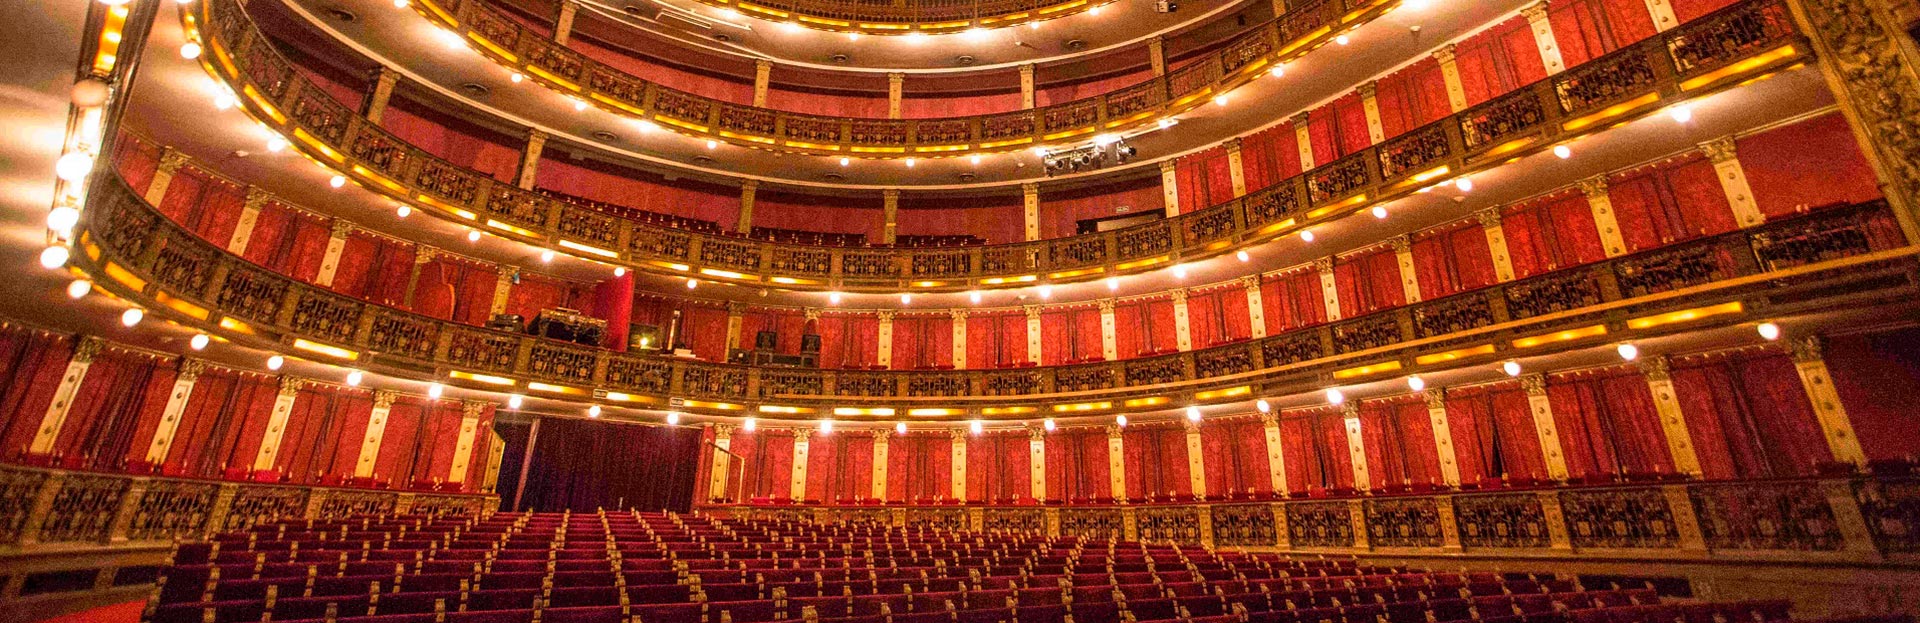 El Teatro Nacional Cervantes cumple 100 años